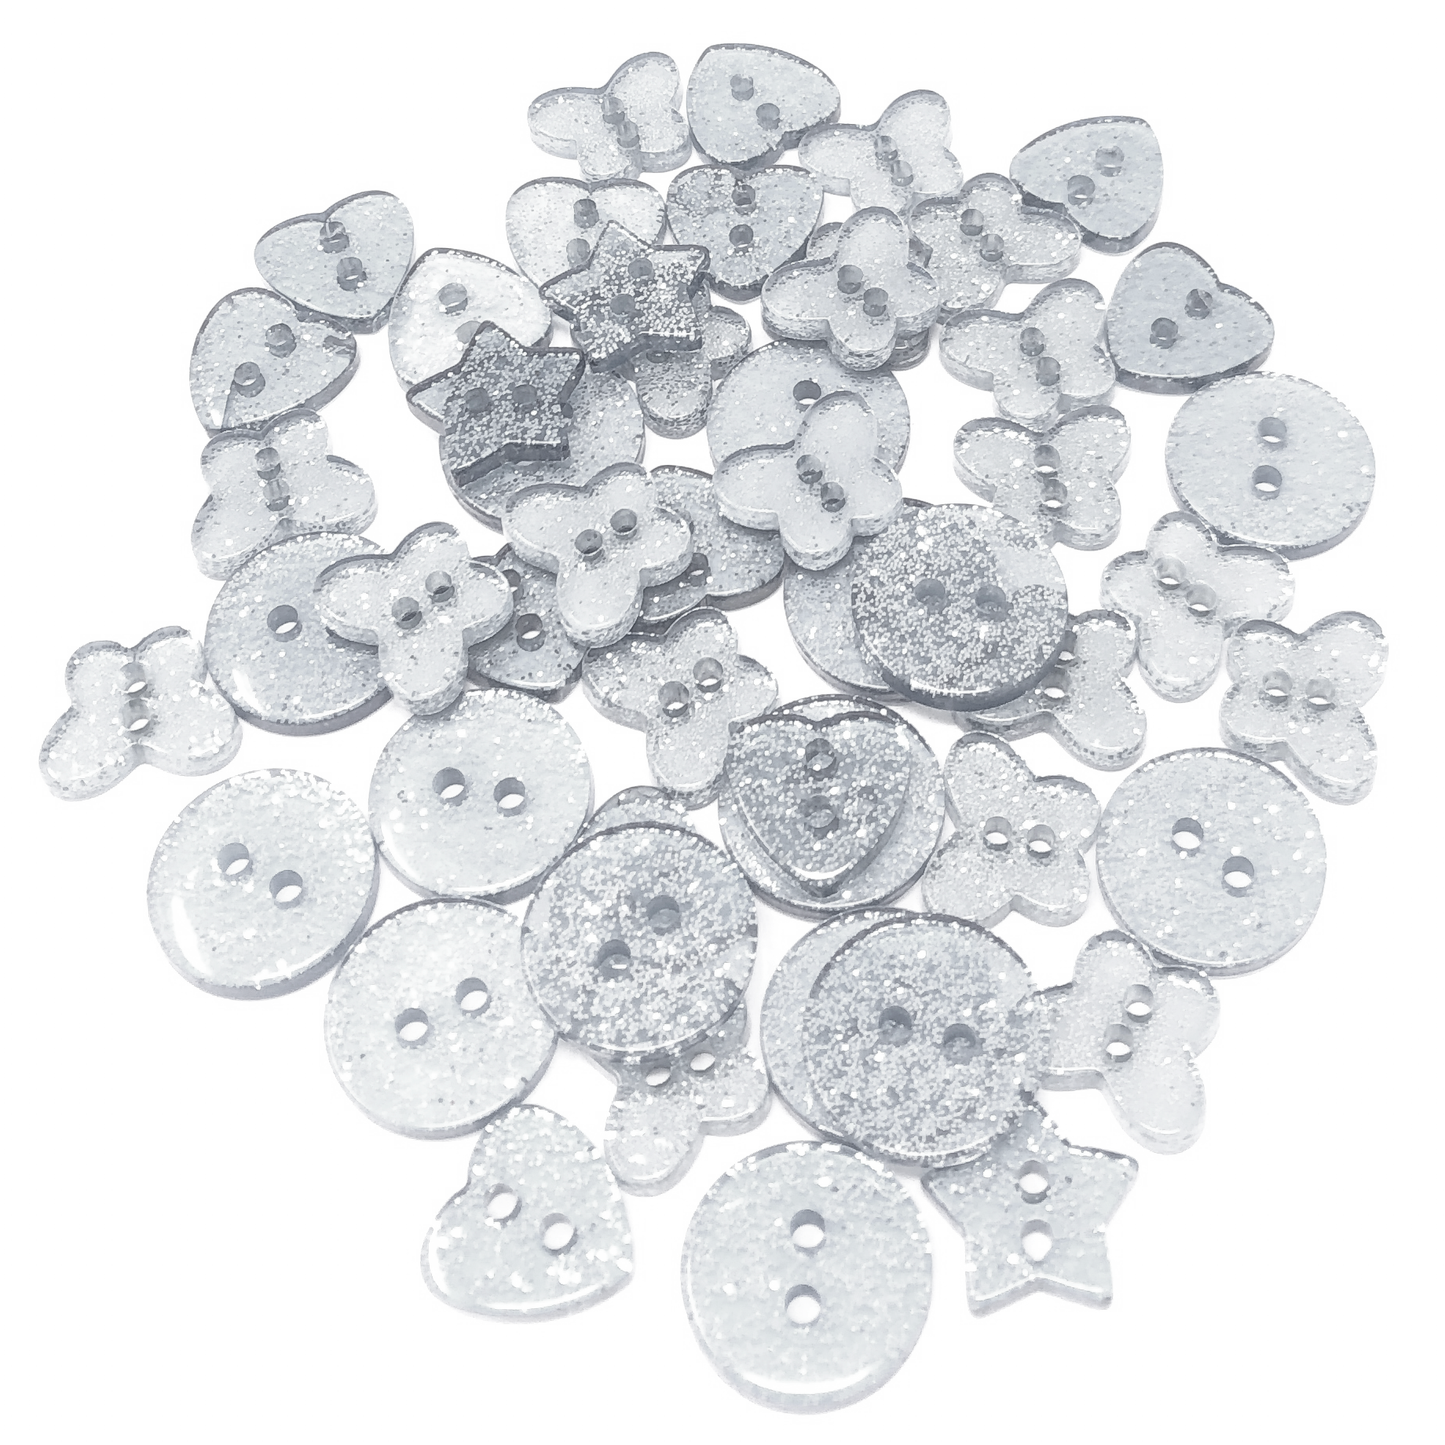 Silver 50 Mix Glitter Mix Shape 13mm Resin Buttons